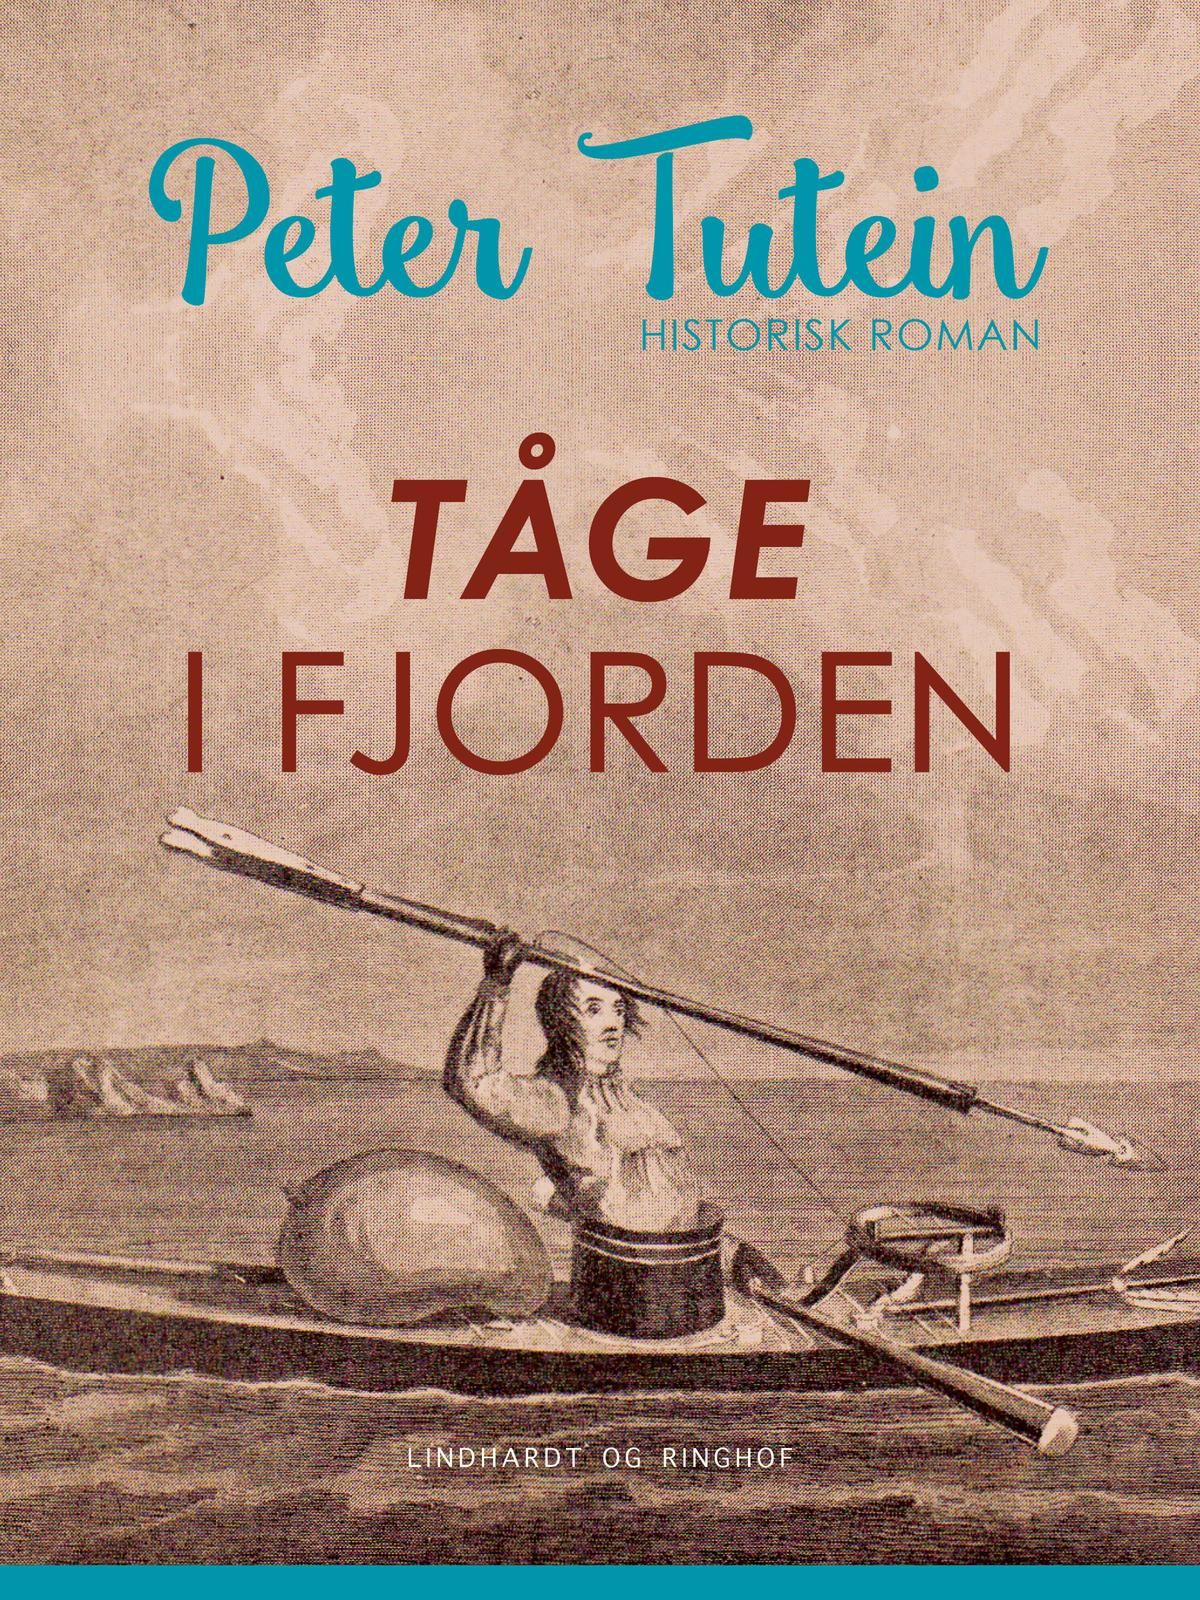 Tåge i fjorden, e-bog af Peter Tutein